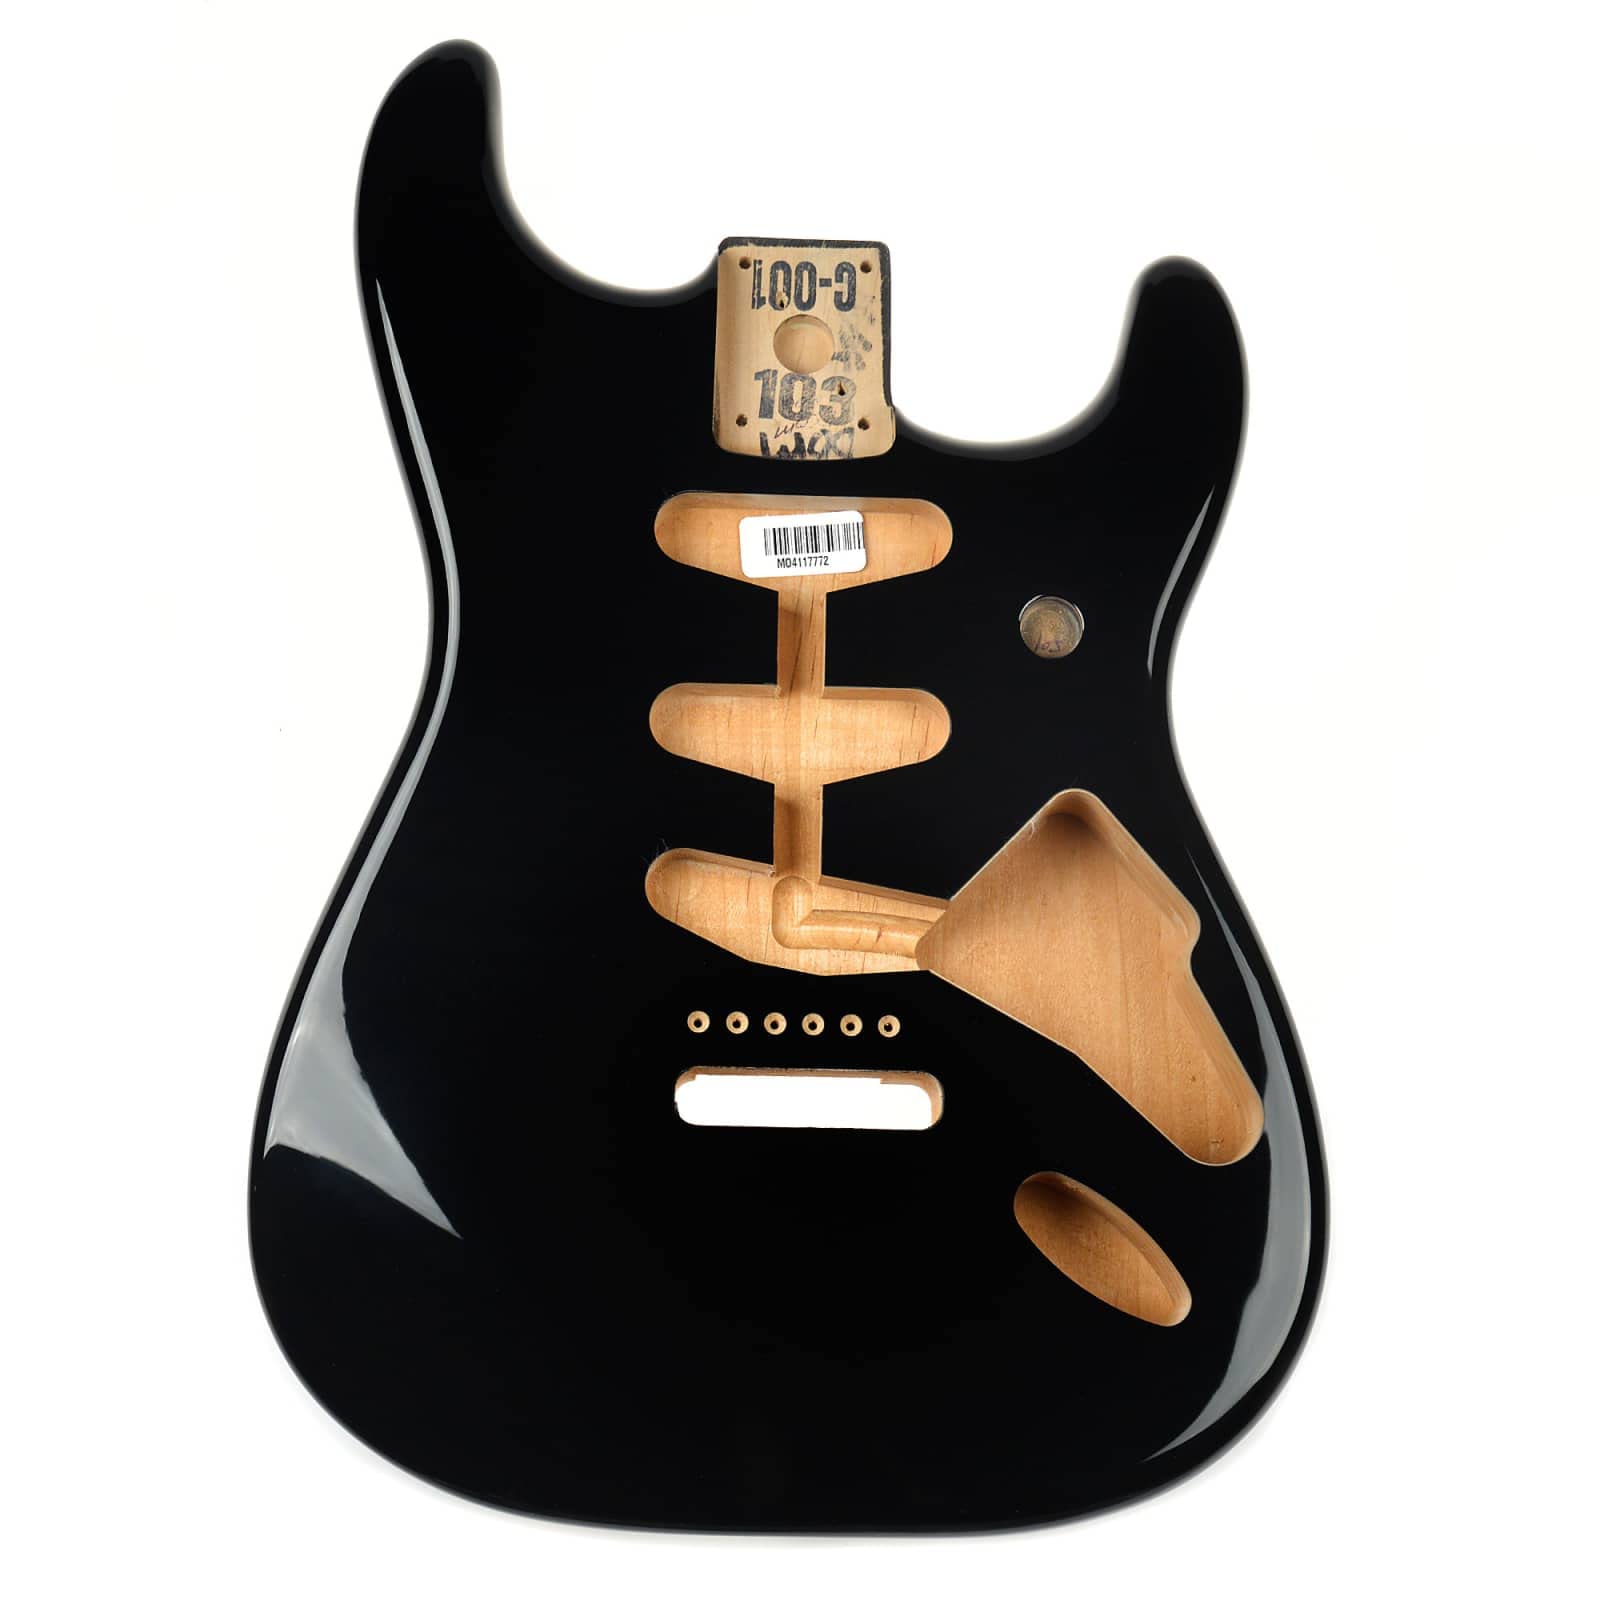 Fender Cuerpo de aliso Stratocaster - Enrutamiento de puente vintage - Sunburst de 3 colores